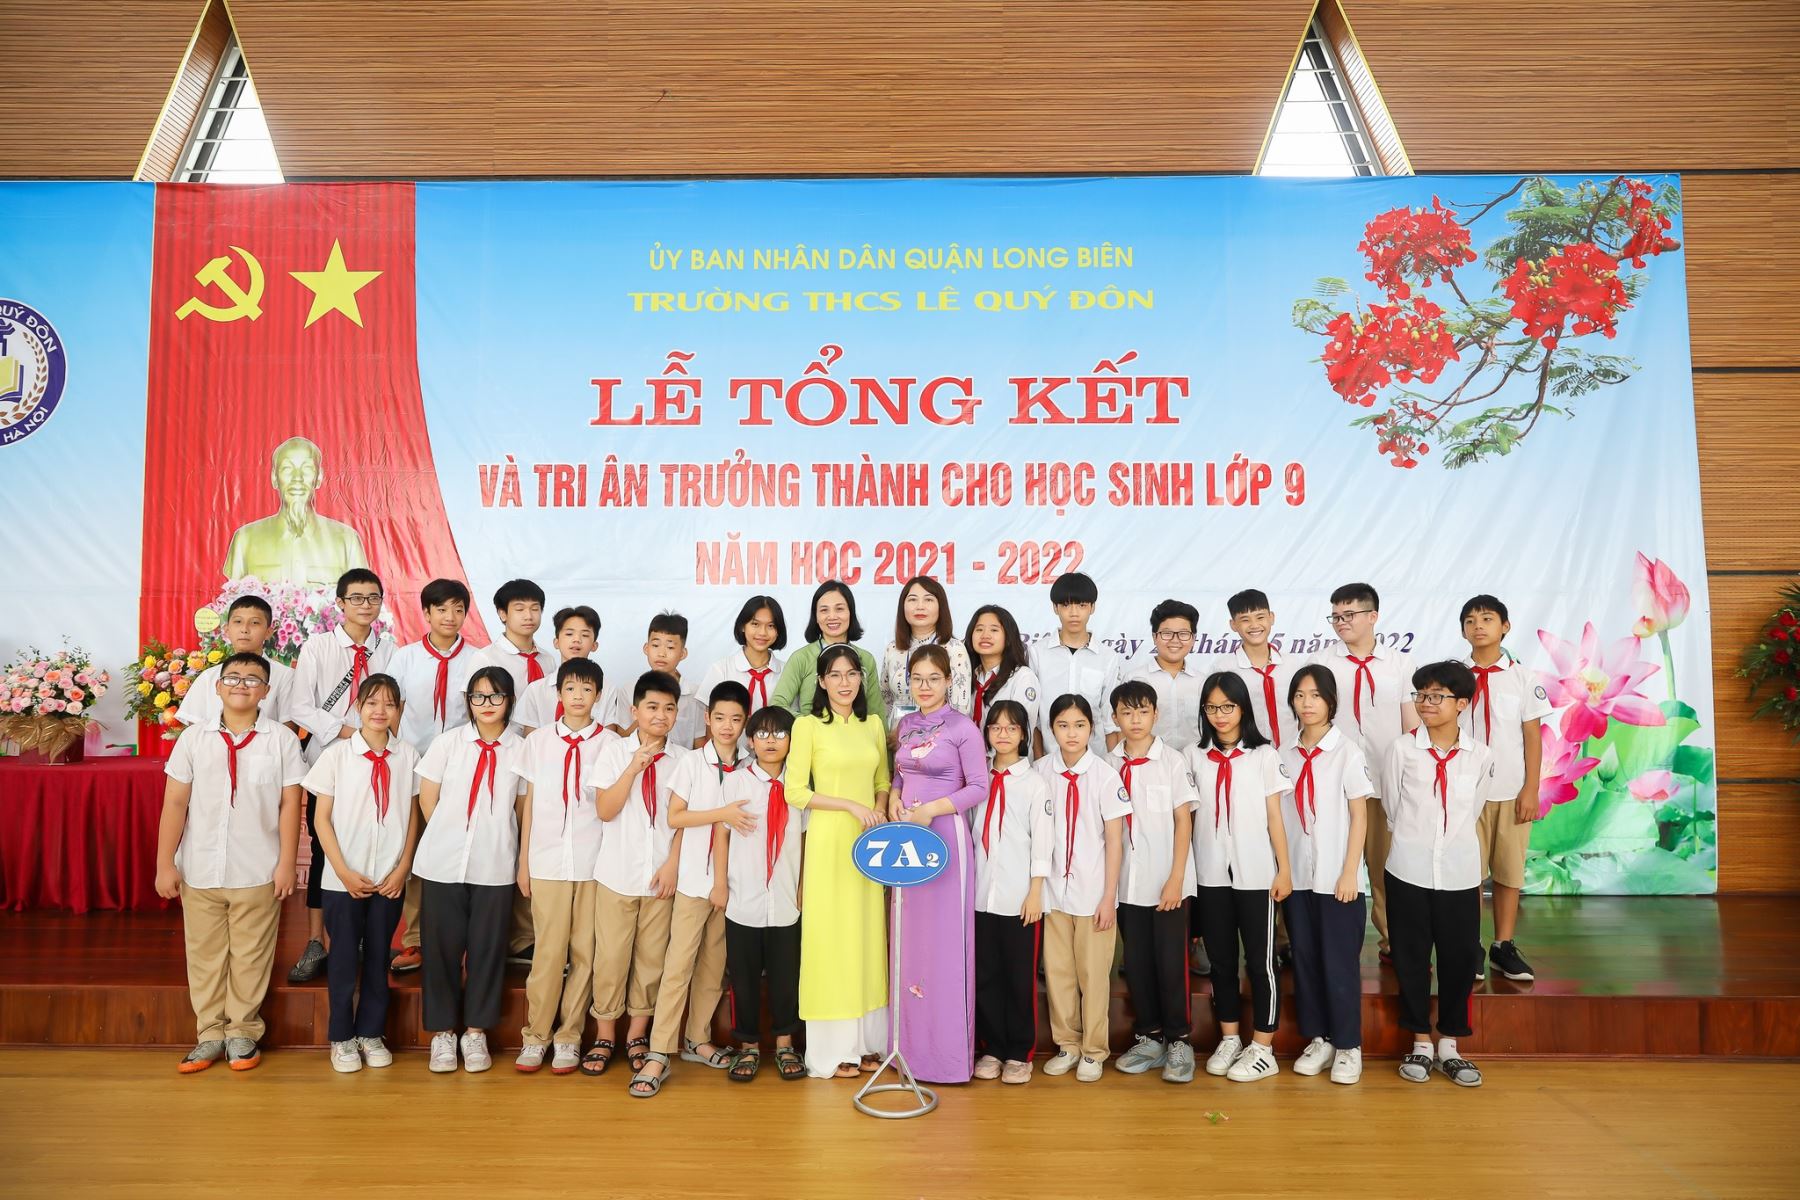 Lễ tổng kết năm học 2021-2022 và Tri ân, trưởng thành cho học sinh lớp 9 trường THCS Lê Quý Đôn